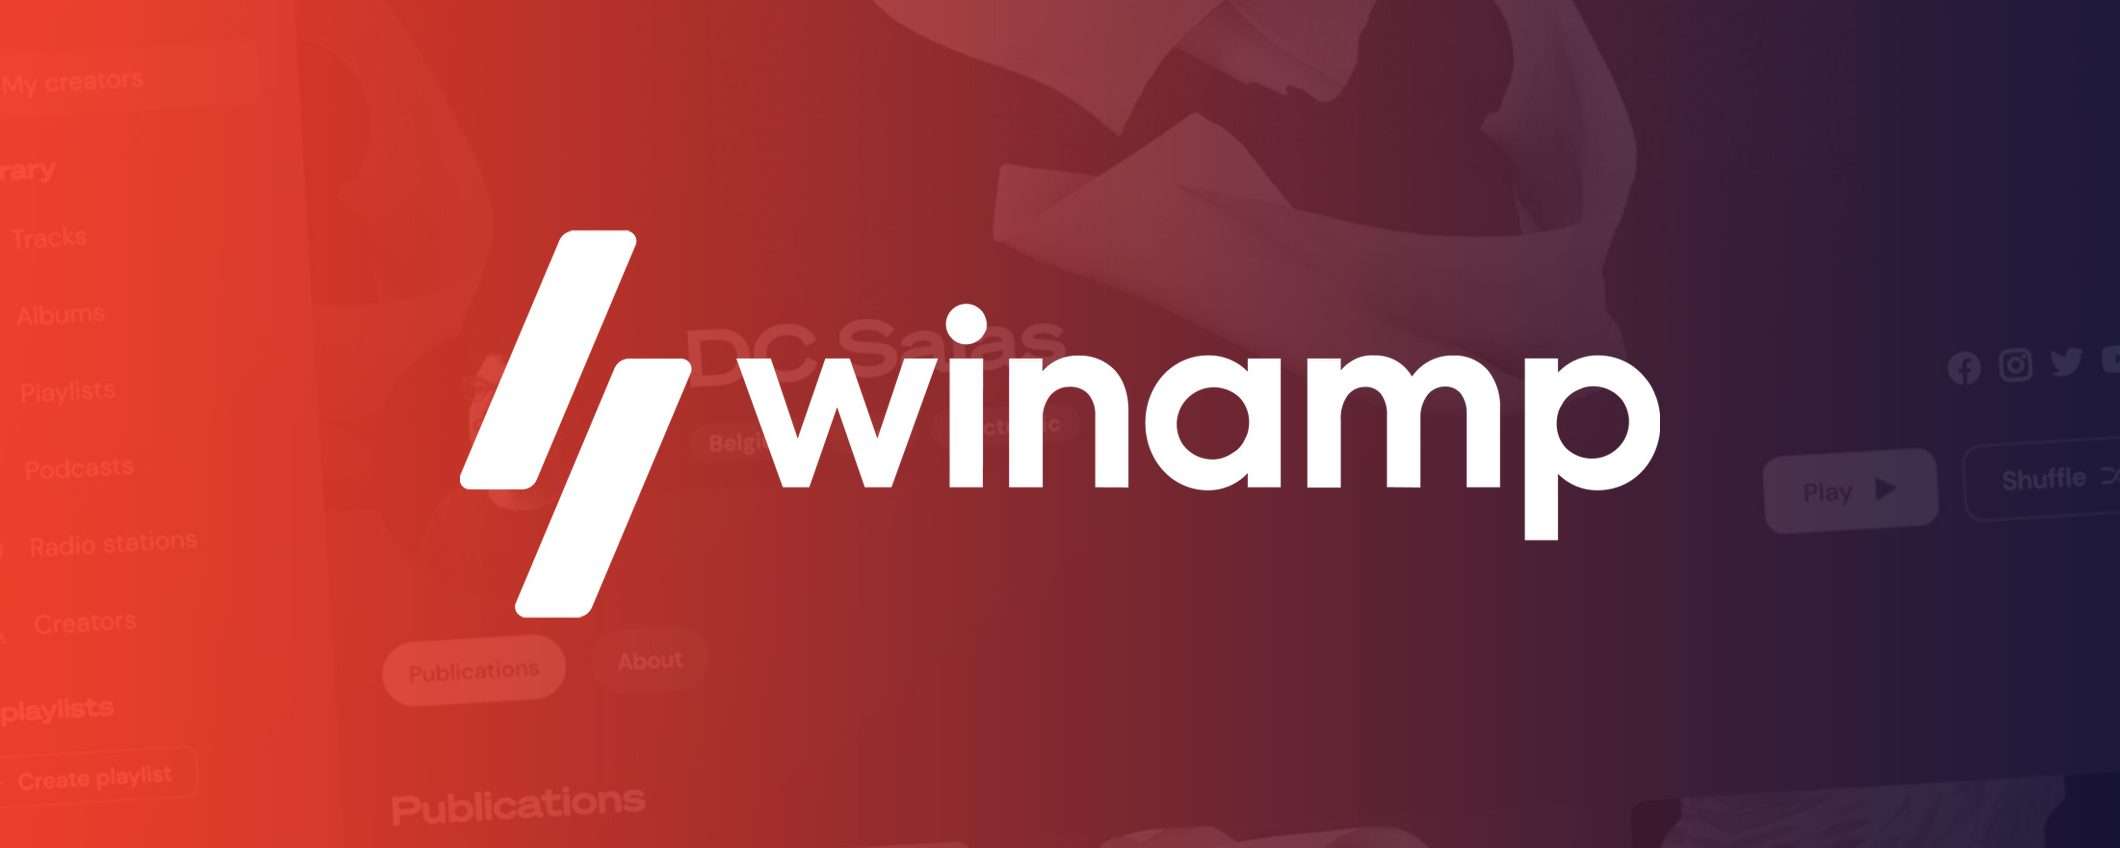 Il nuovo Winamp sta arrivando: la data di lancio